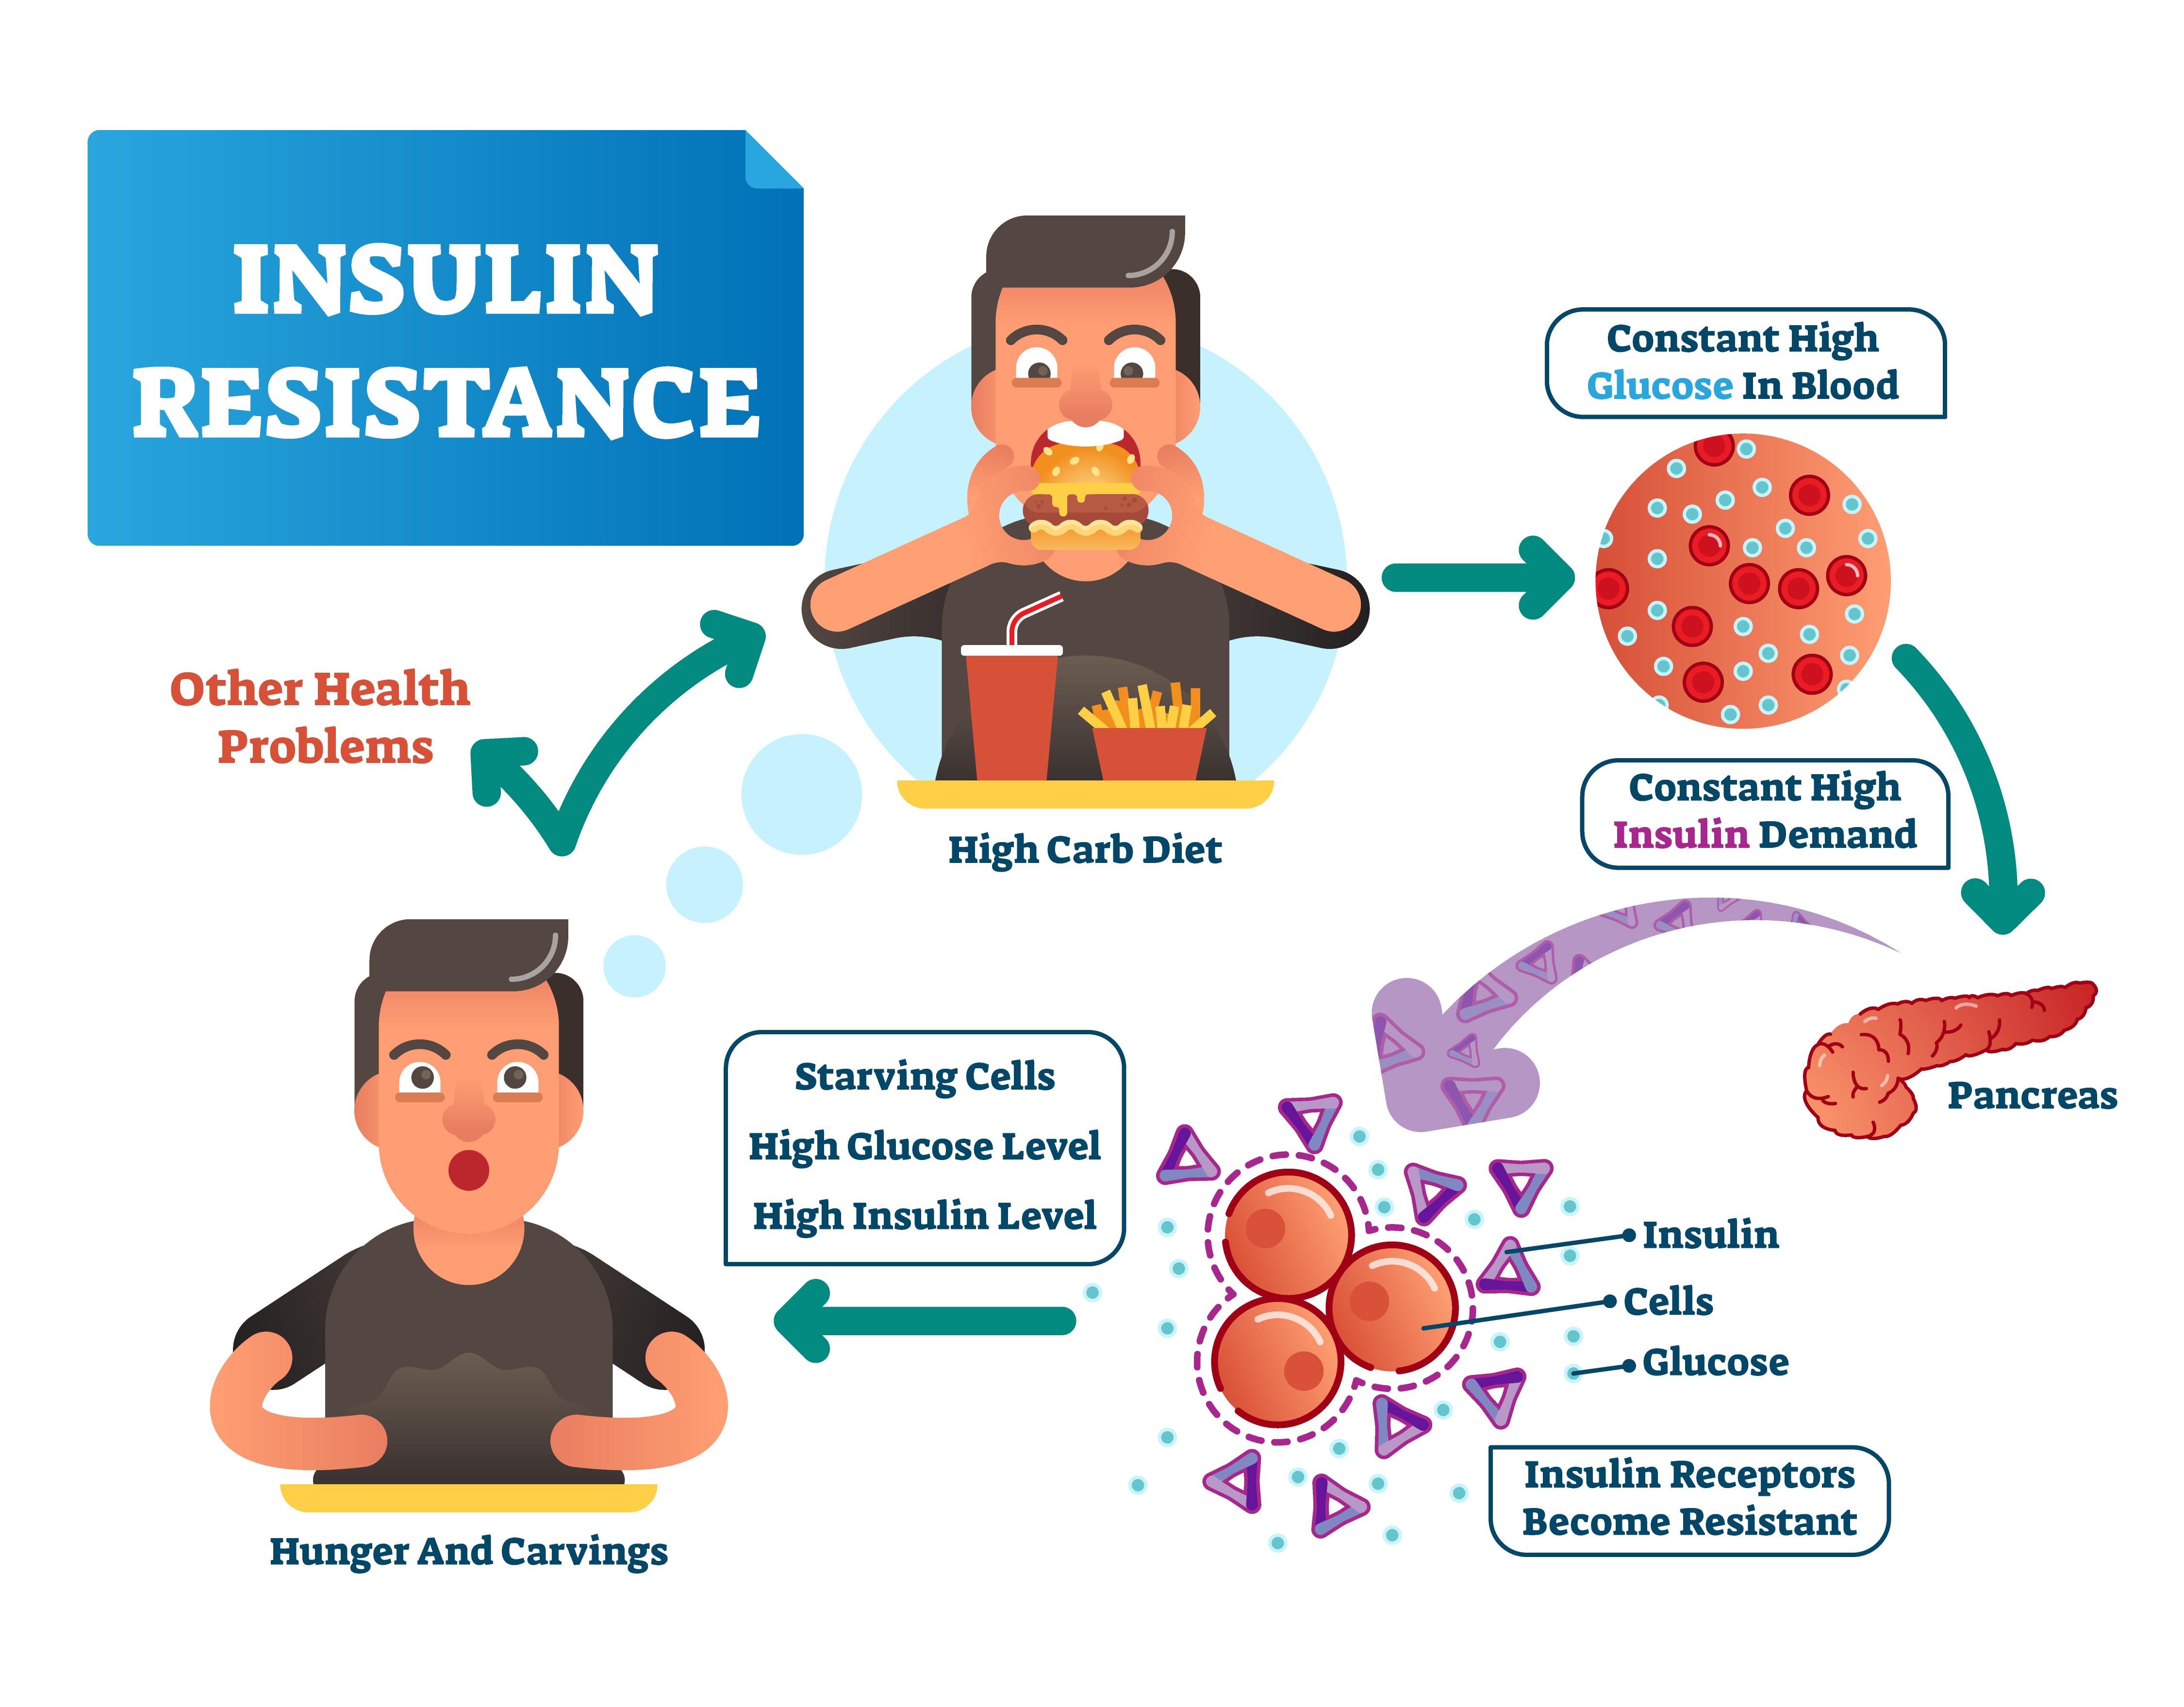 Cetosis y resistencia ala insulina